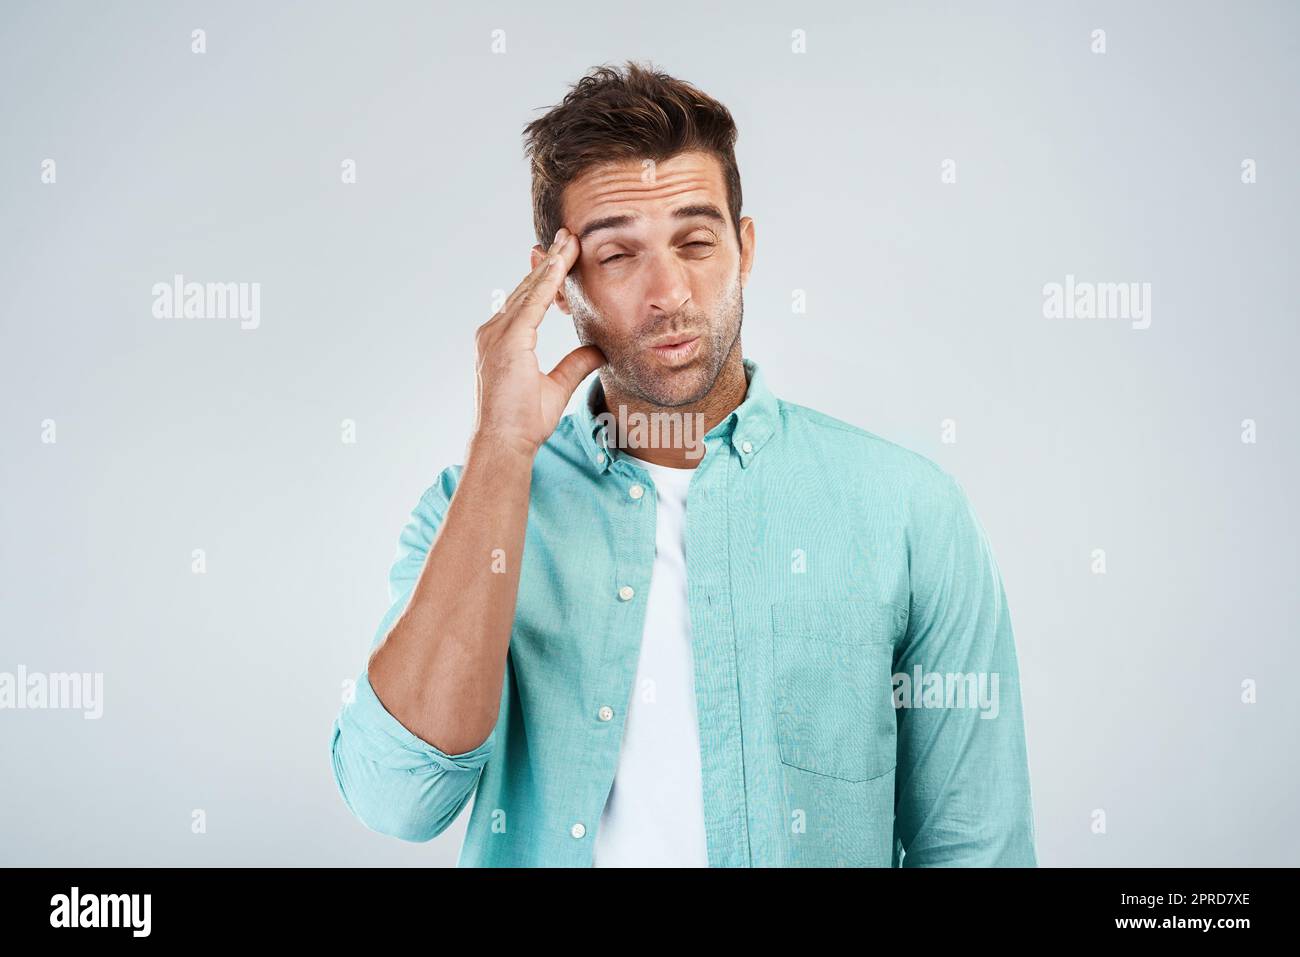 Wo kommt das her? Studioaufnahme eines jungen Mannes mit unangenehmem Gesichtsausdruck aufgrund von Kopfschmerzen, während er vor einem grauen Hintergrund steht. Stockfoto